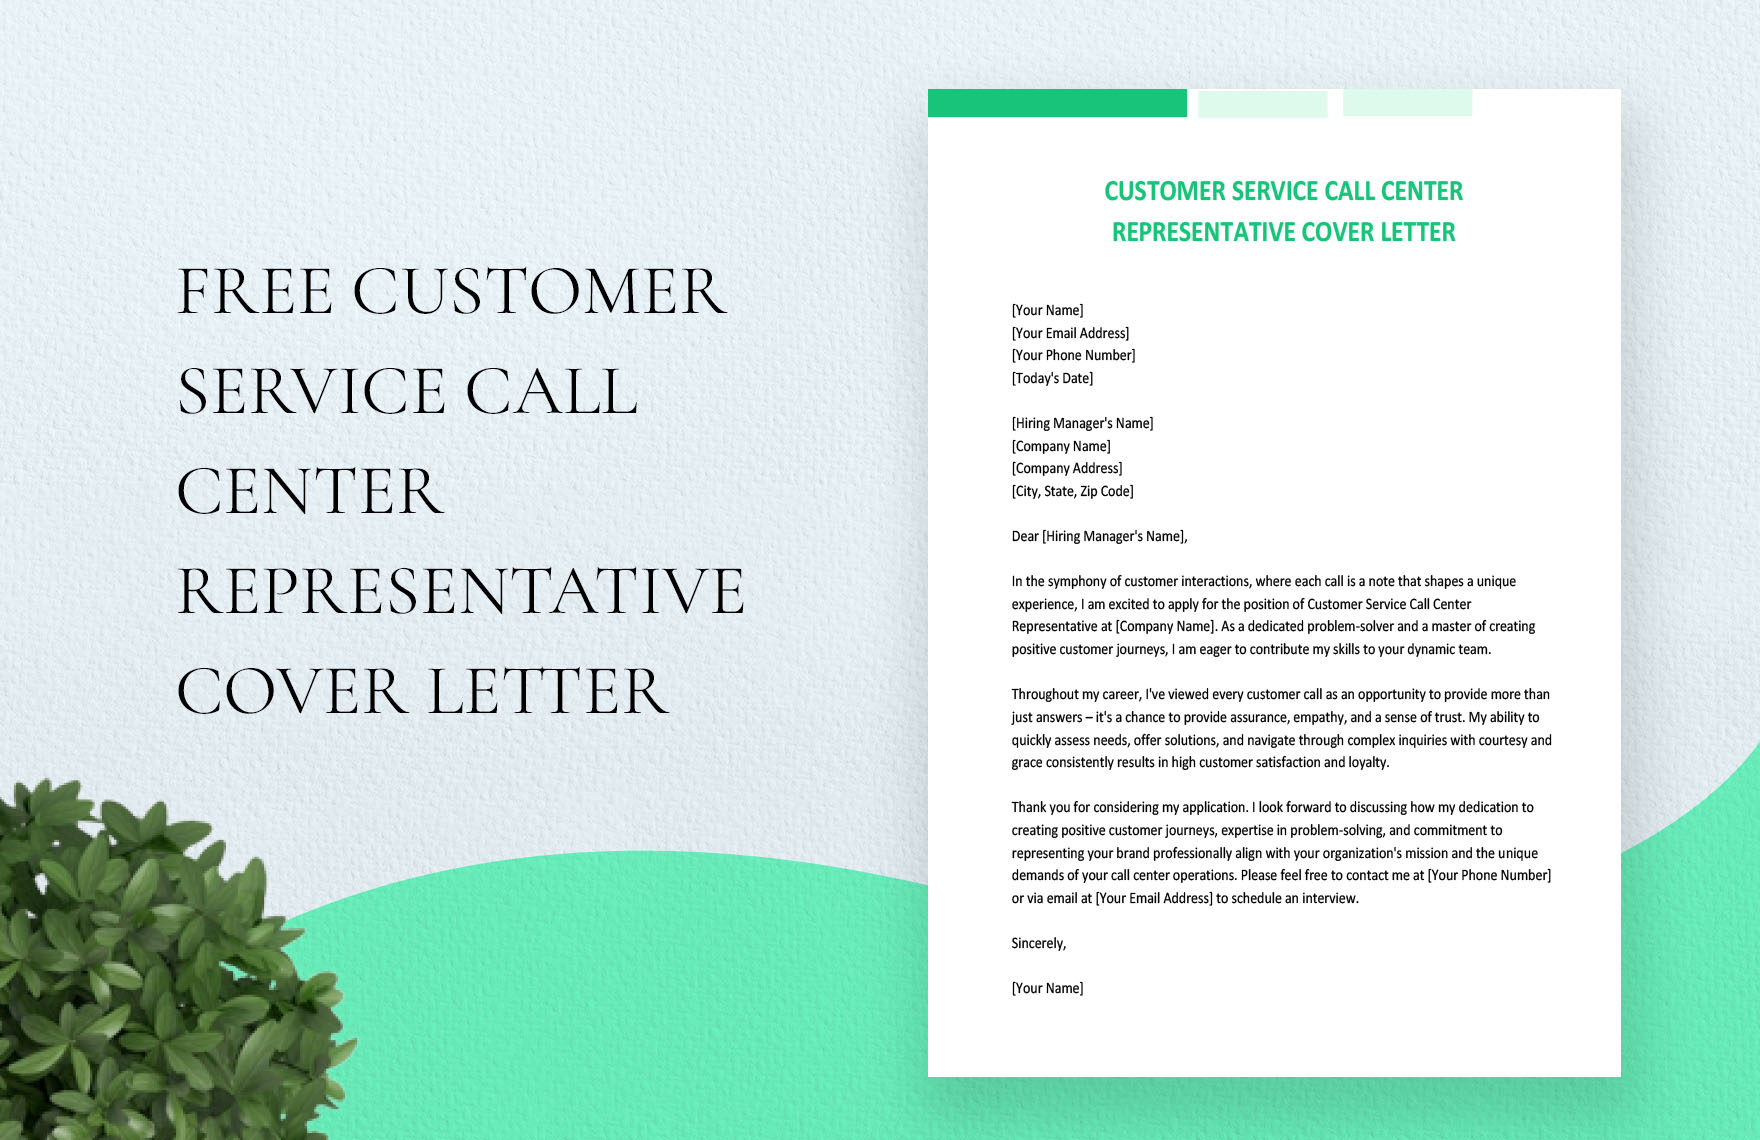 Customer Service Call Center Representative Cover Letter